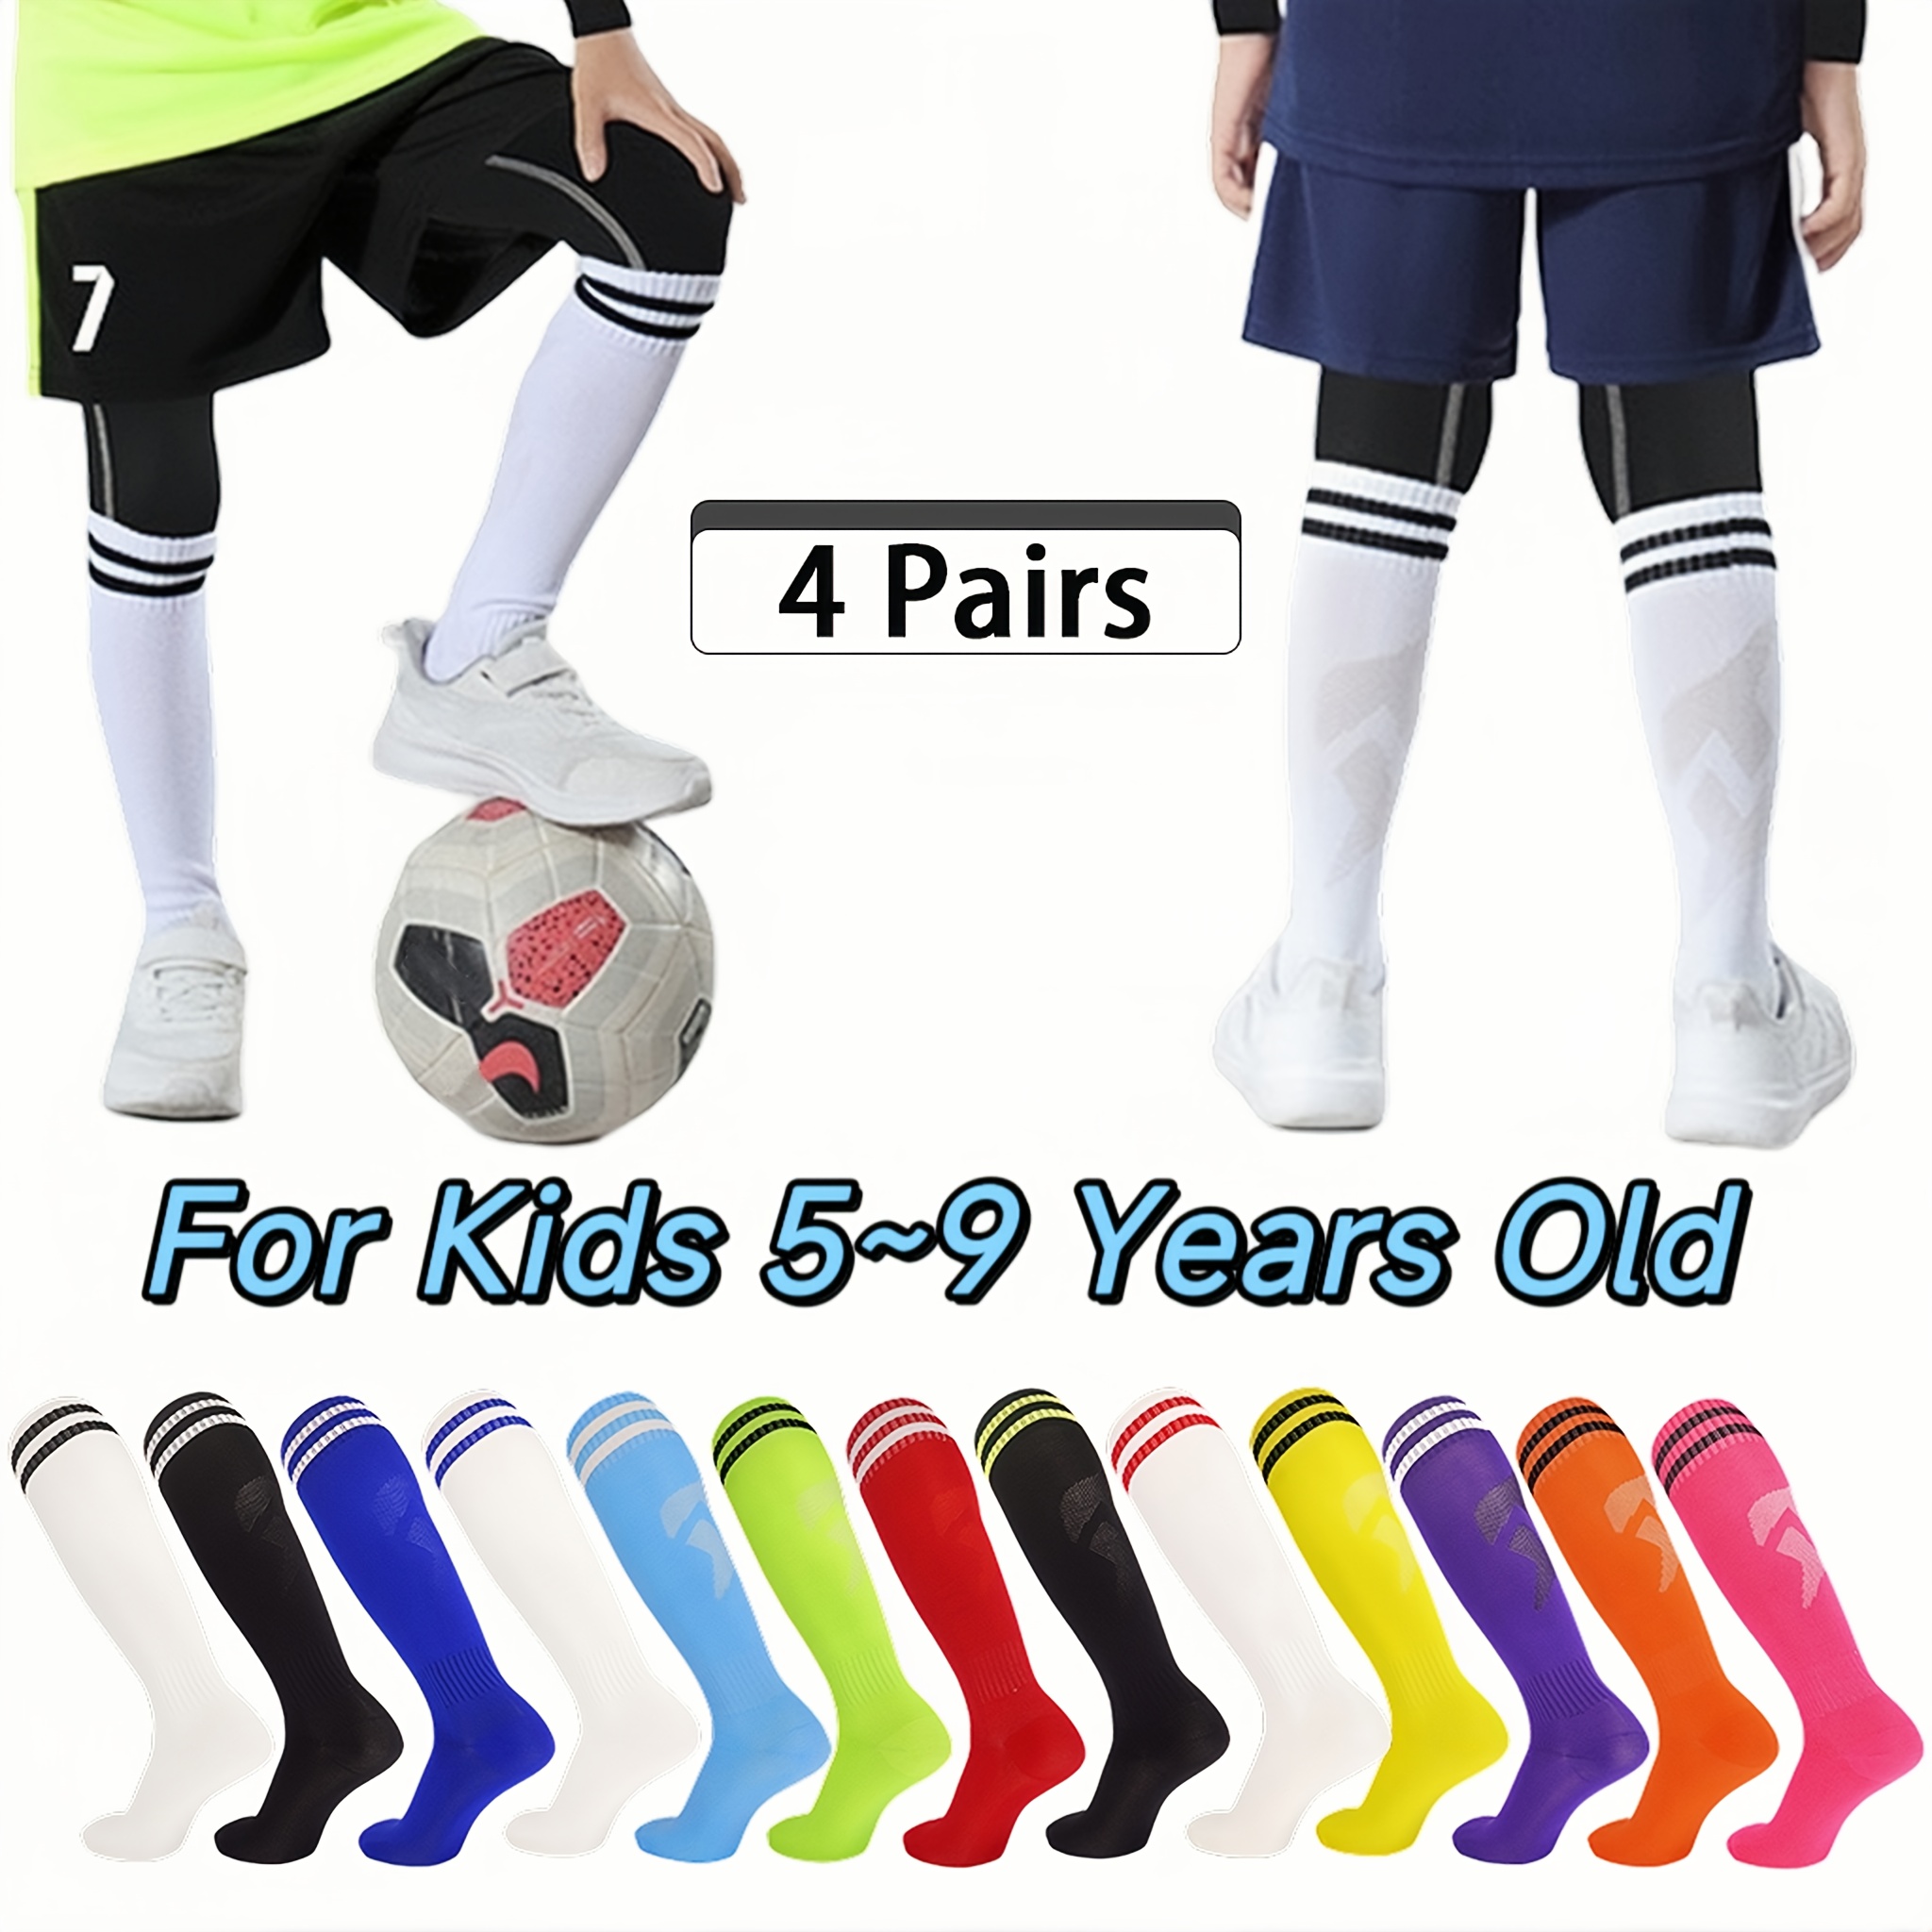 Kids Grip Athletic Socks,4 Pairs Soccer Anti 8-12 Years Black+red+